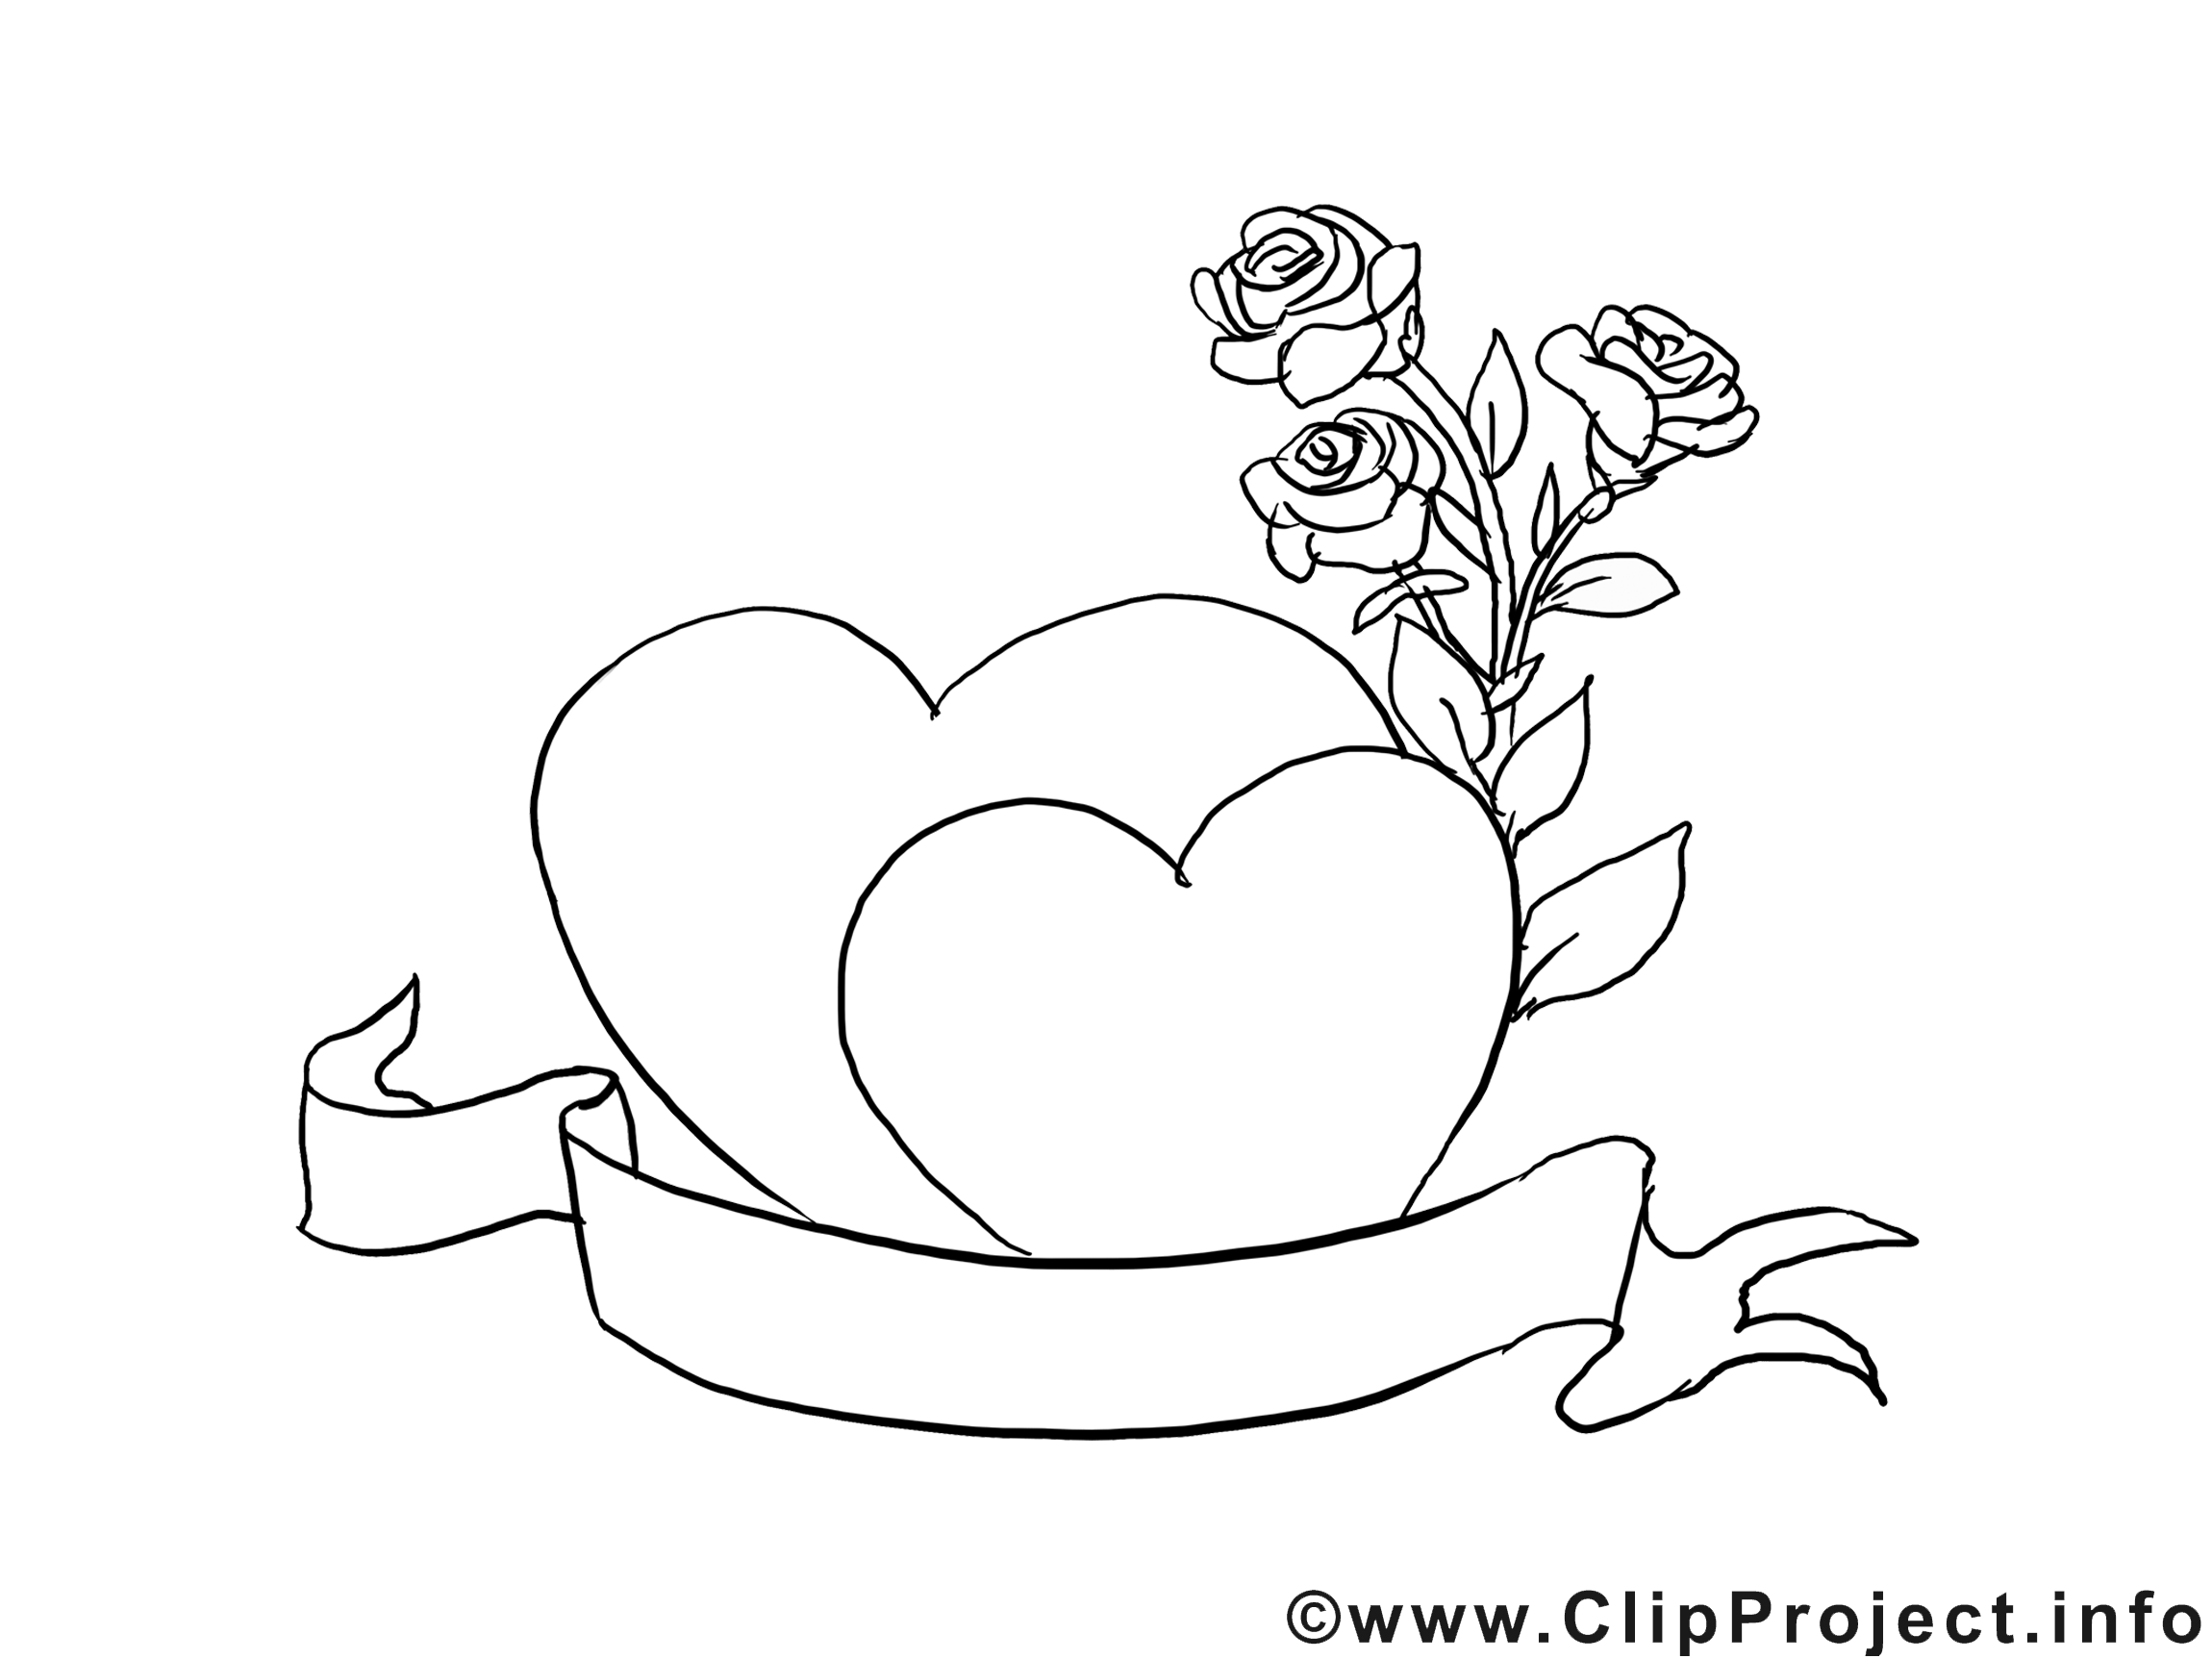 Roses dessin à télécharger – Saint-valentin à colorier